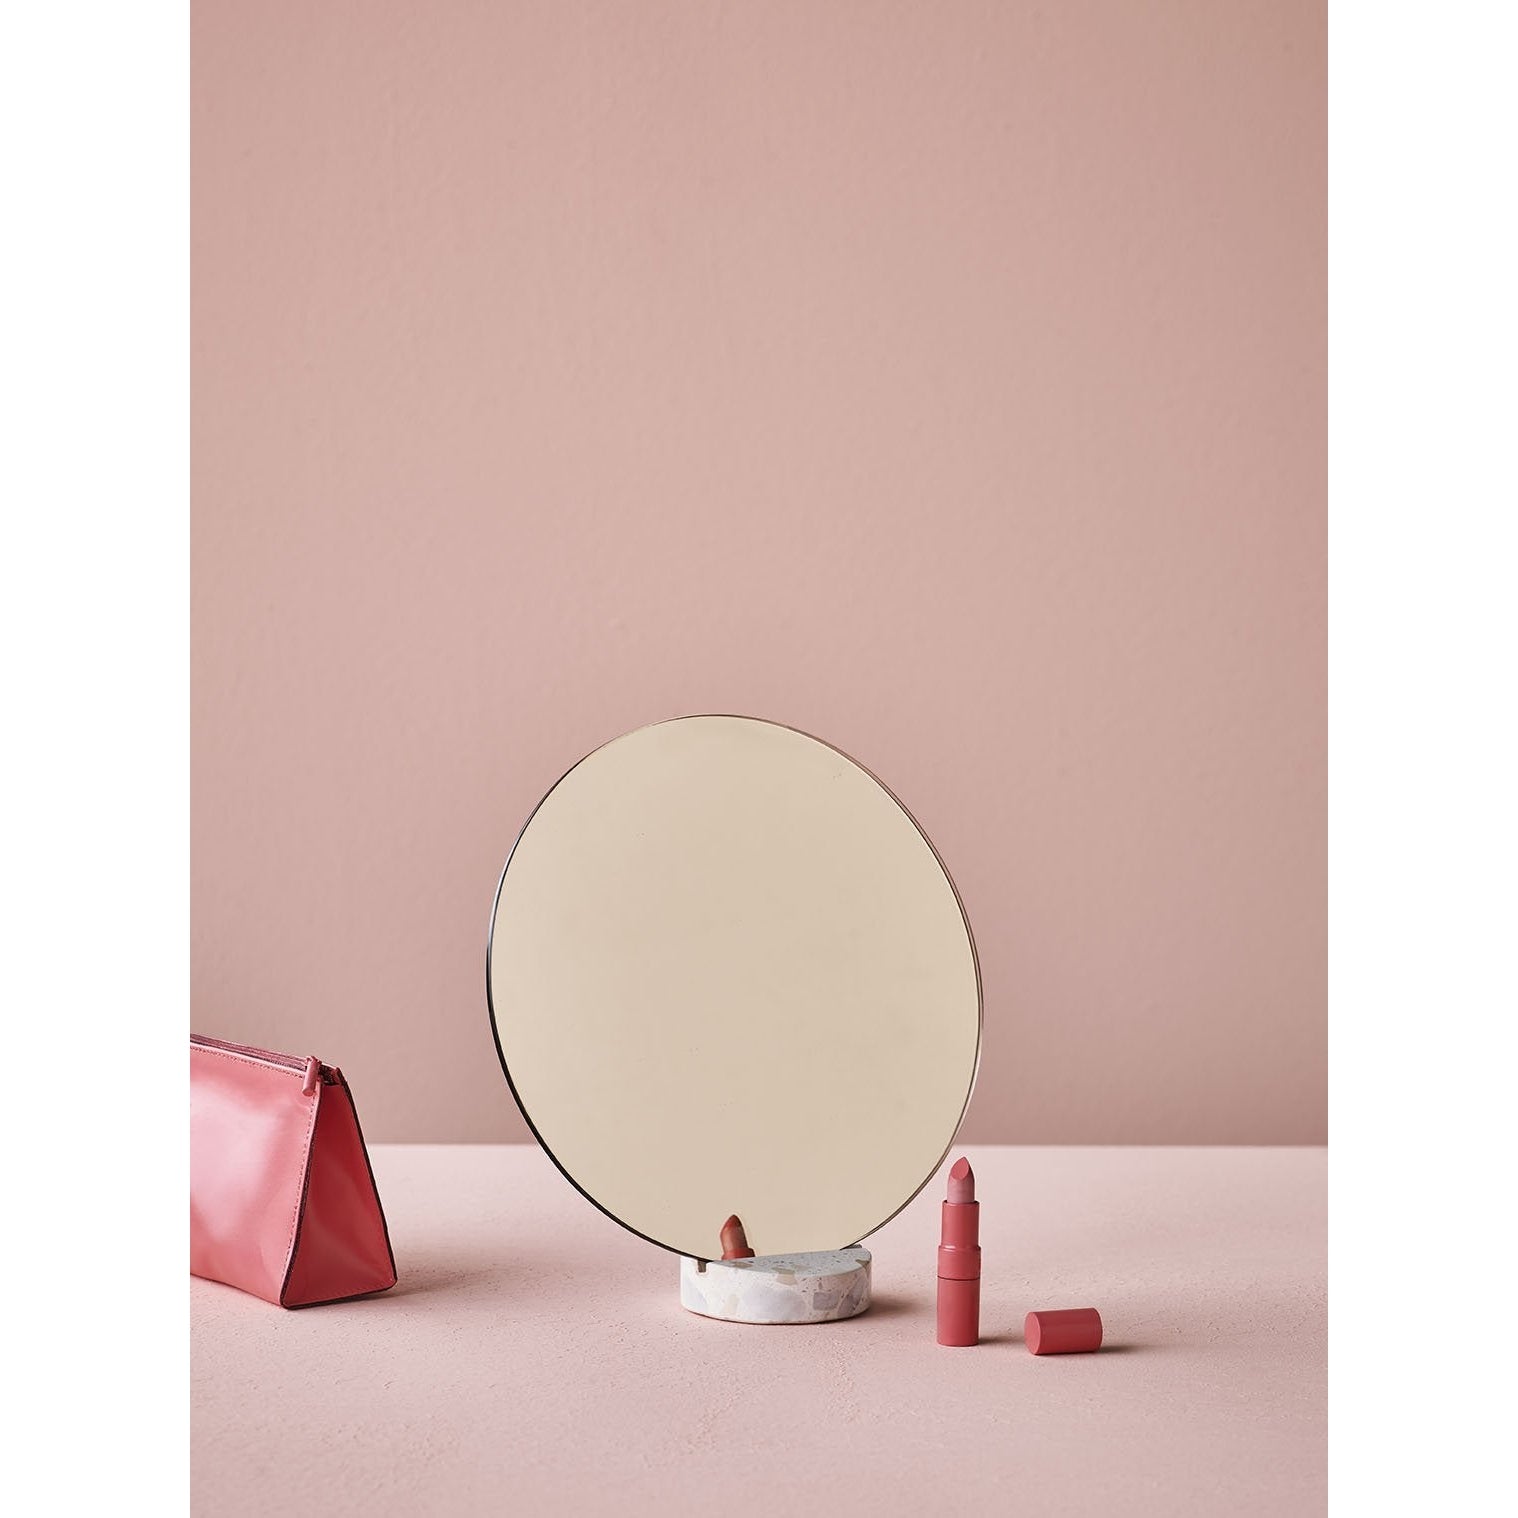 Lucie Kaas Erat speil rosa, 25 cm